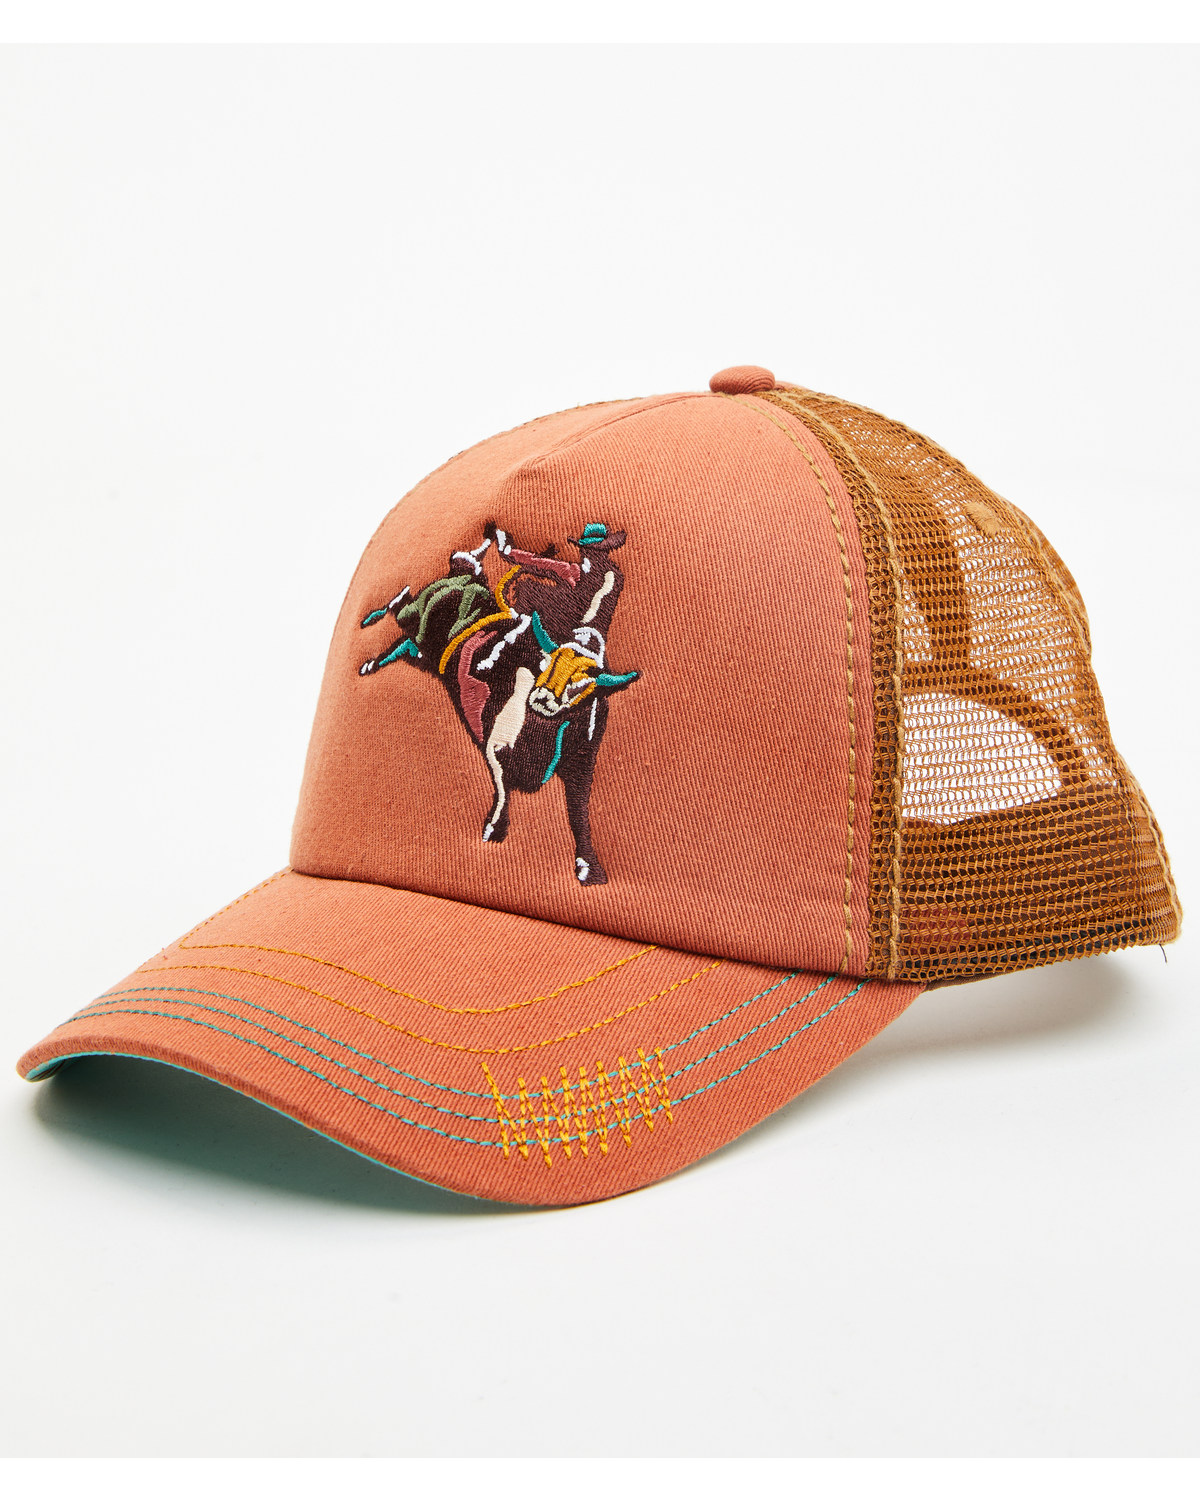 Catchfly Women's Bucking Bull Rider Embroidered Ponytail Ball Cap